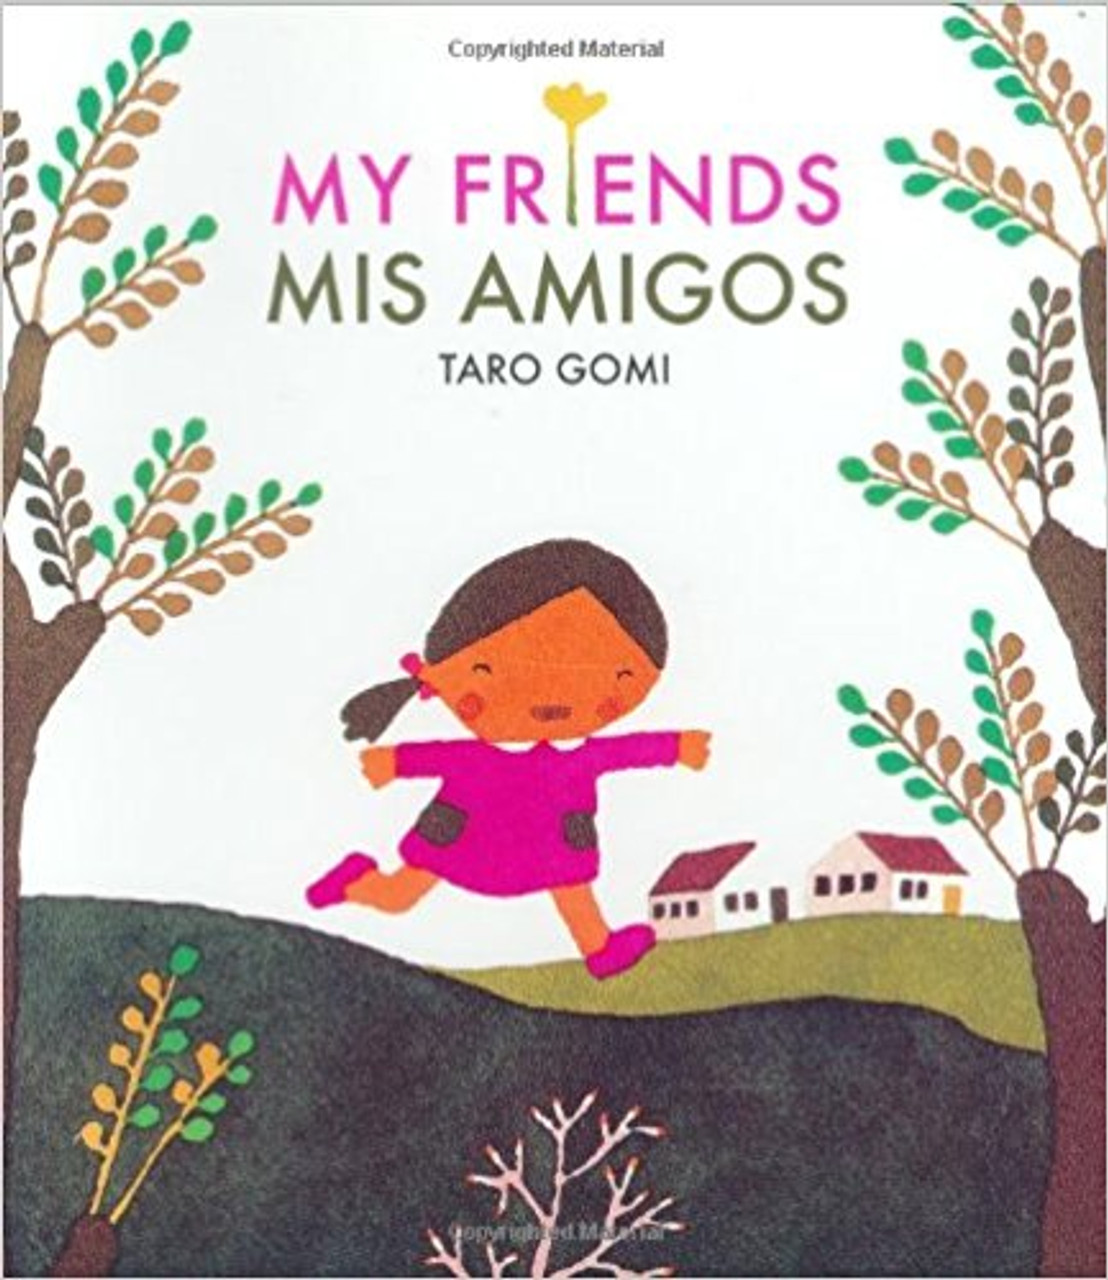 My Friends/Mis Amigos by Taro Gomi